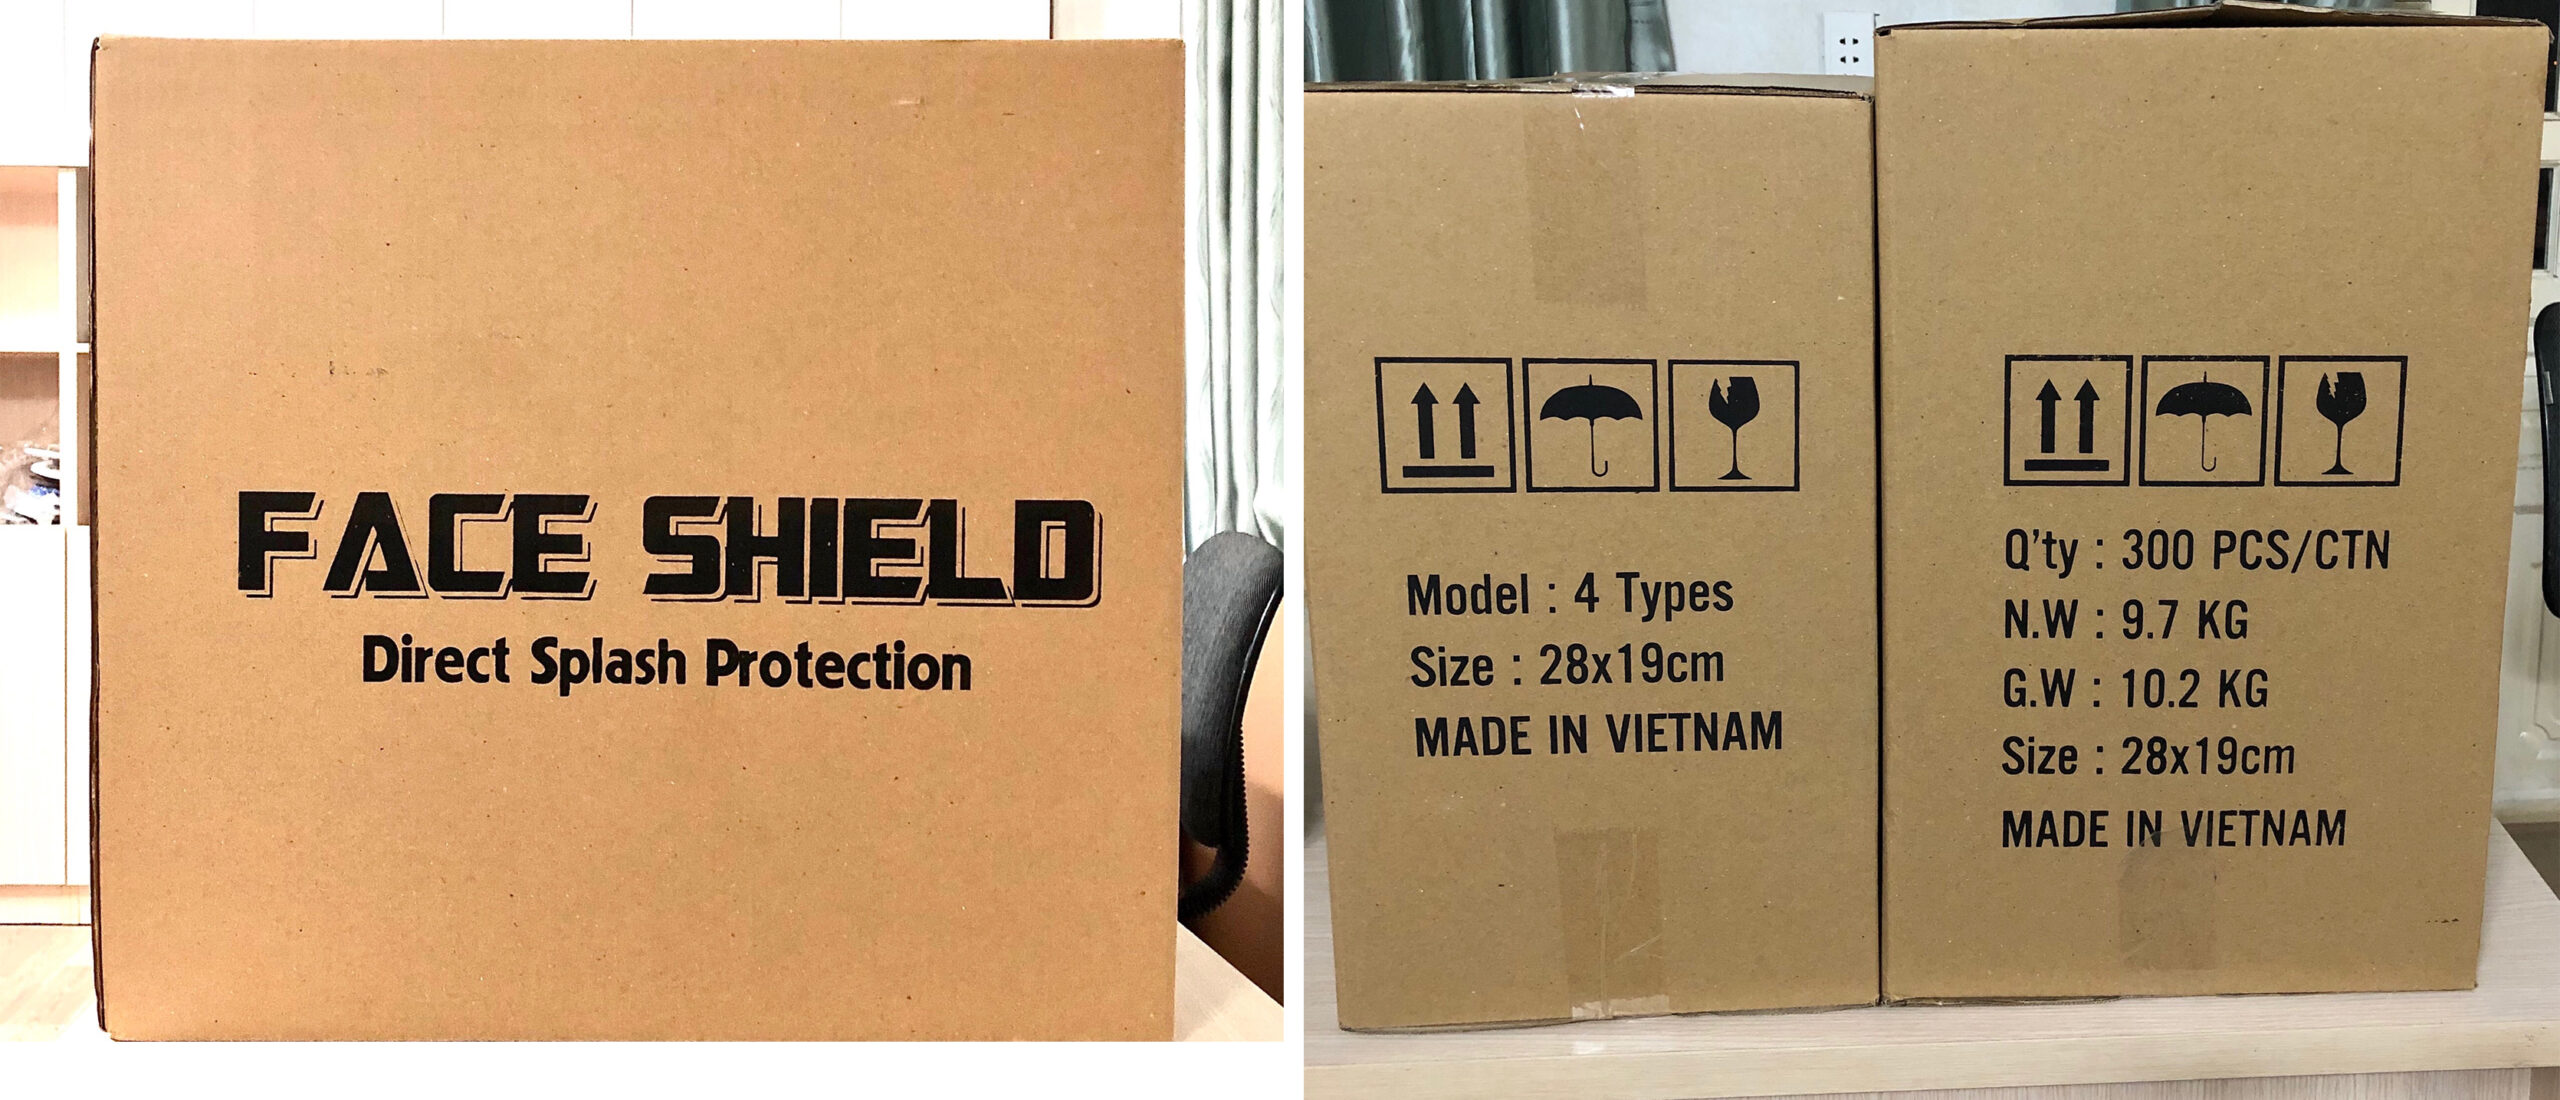 Faceshield được đóng vào thùng cartoon tiêu chuẩn dành cho xuất khẩu đi Mỹ